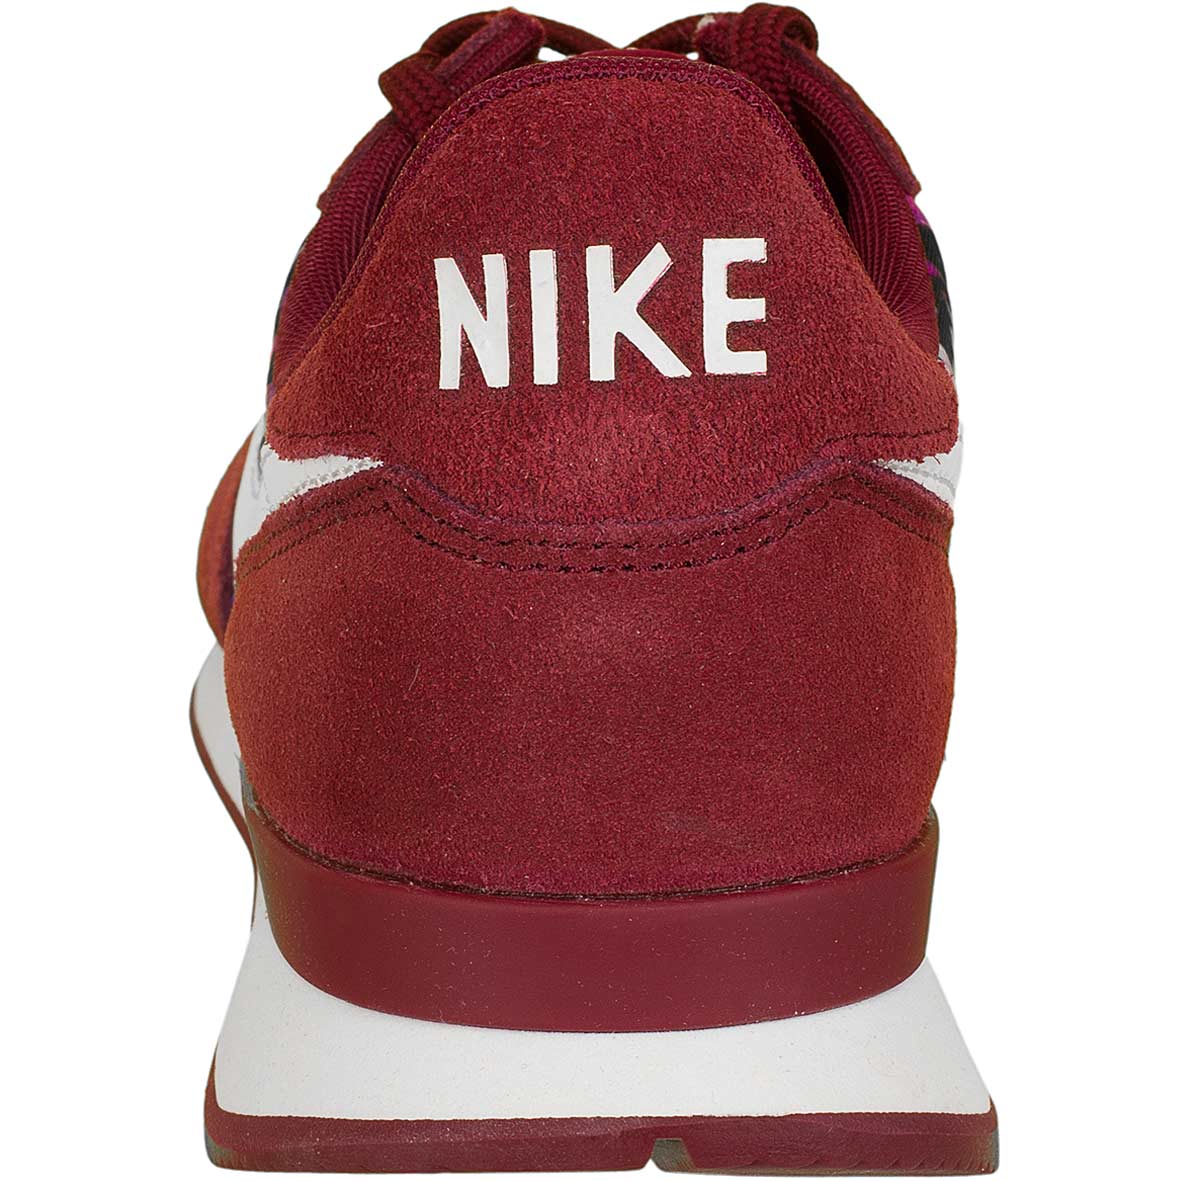 ☆ Nike Damen Sneaker Internationalist Premium rot/weiß - hier bestellen!